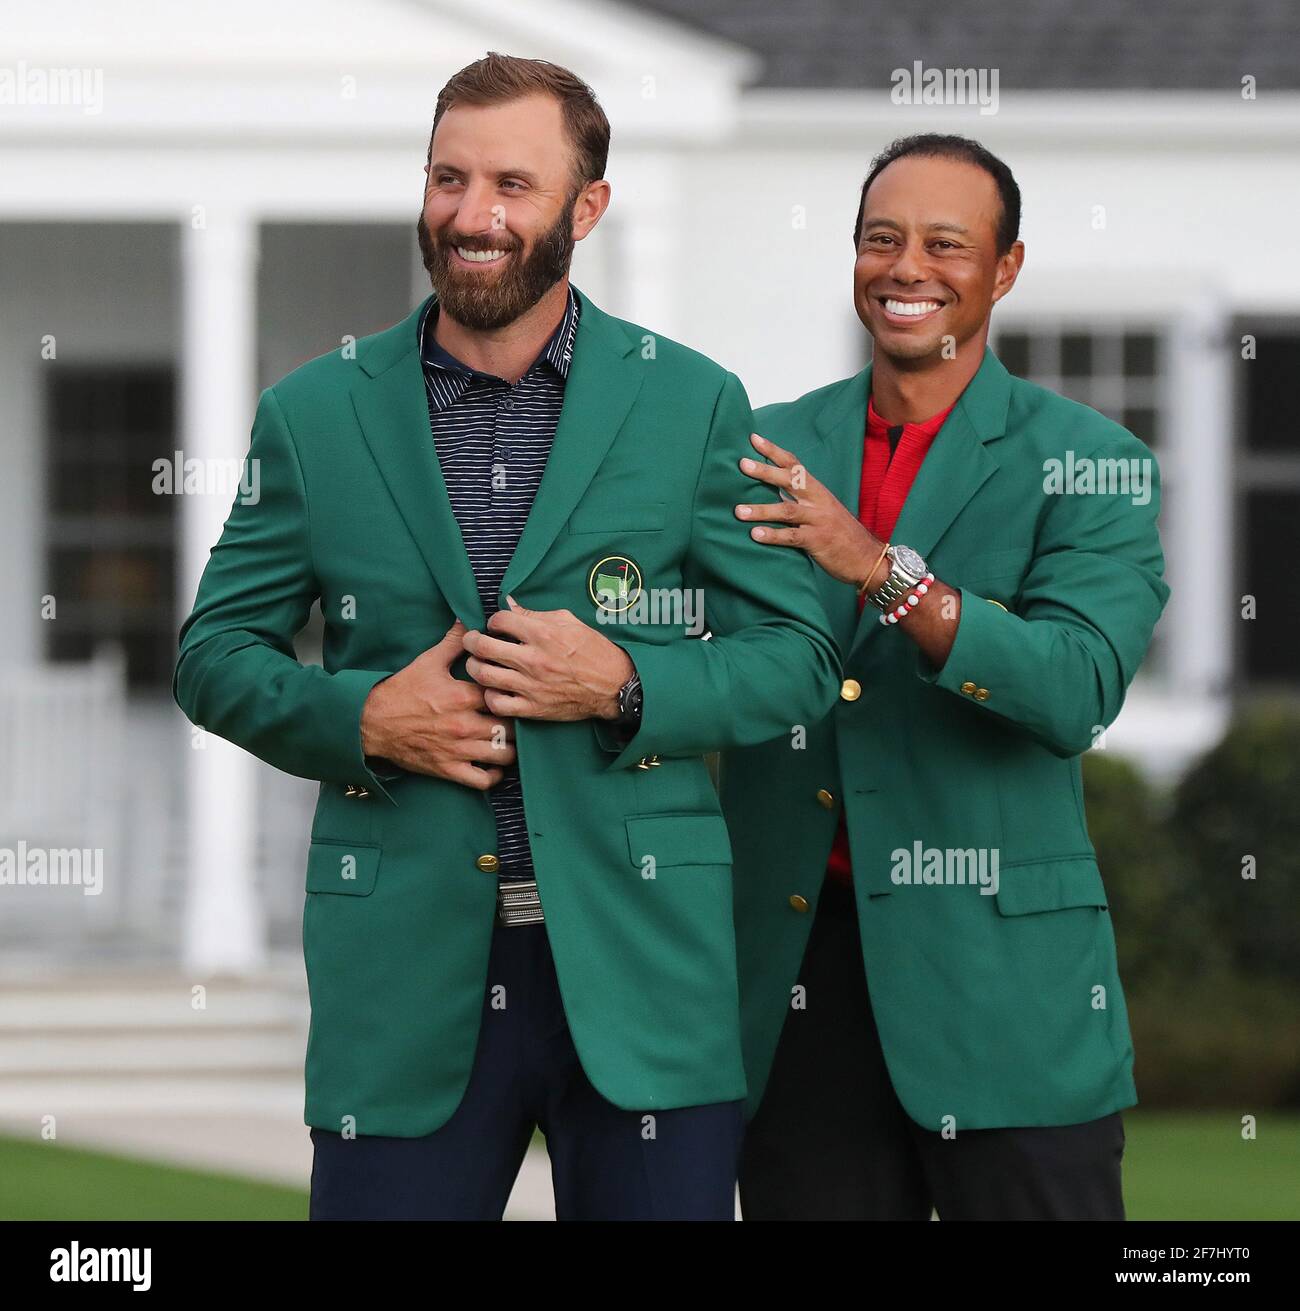 Augusta, USA. November 2020. Tiger Woods überreicht Dustin Johnson seine grüne Jacke, nachdem er am Sonntag, dem 15. November 2020, in Augusta, Georgia, die Masters im Augusta National Golf Club gewonnen hatte. (Foto von Curtis Compton/Atlanta Journal-Constitution/TNS/Sipa USA) Quelle: SIPA USA/Alamy Live News Stockfoto